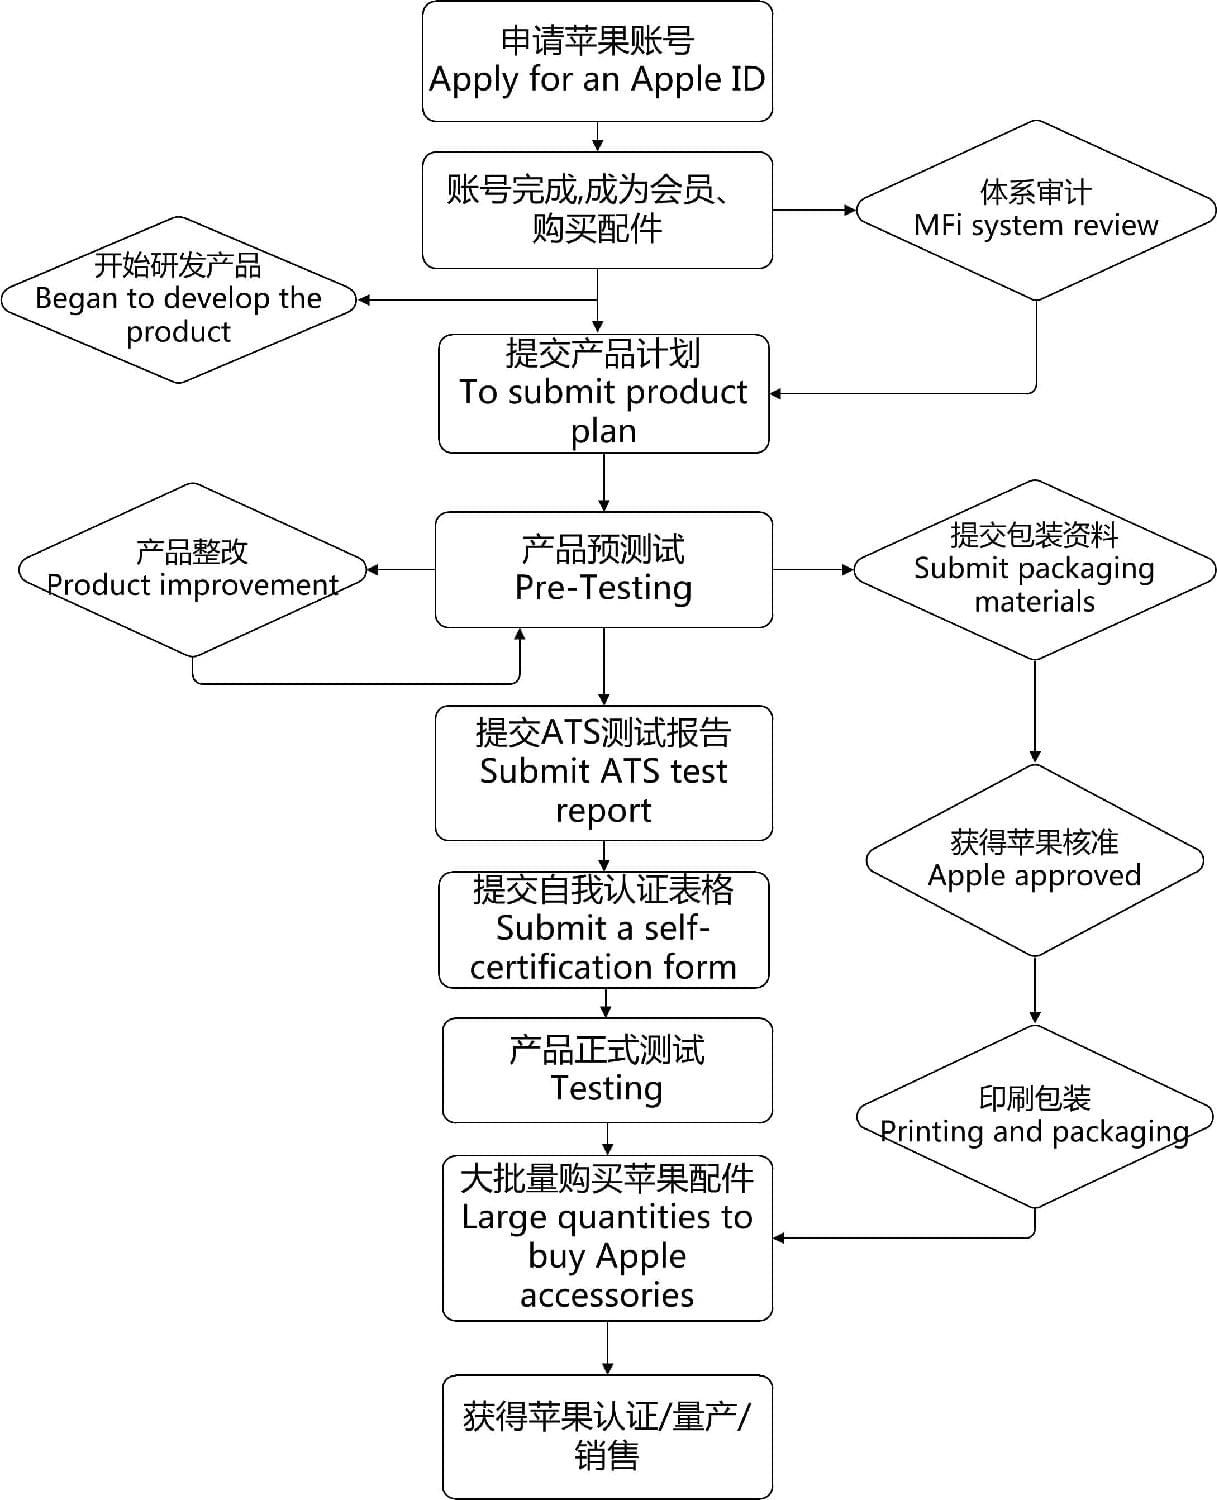 苹果2020秋季发布会-苹果MFi认证-微测检测